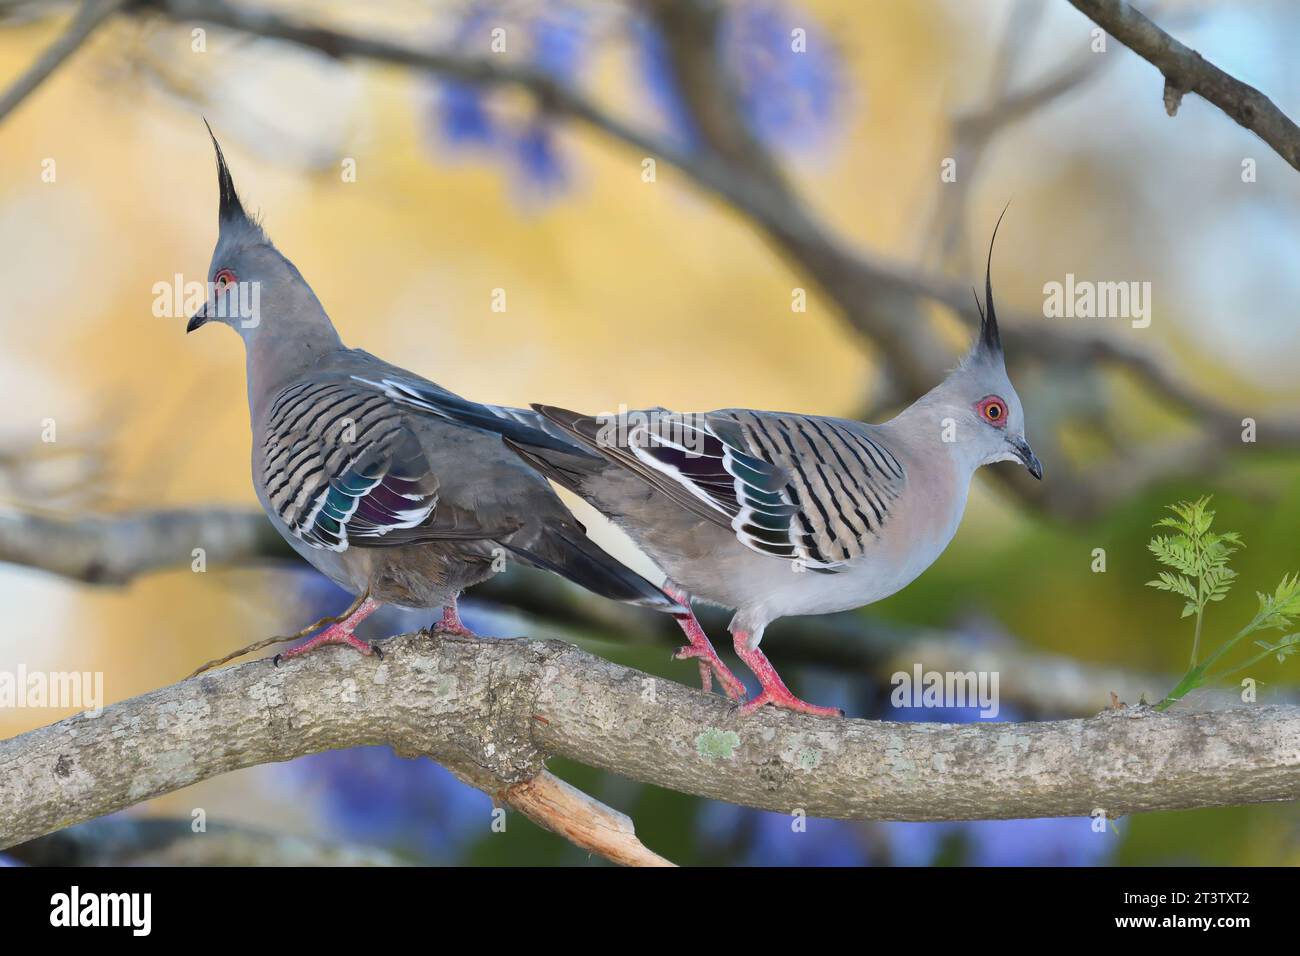 Deux Australian Adult Crested Pigeons -Ocyphaps lophotes- oiseaux sur une branche d'arbre, face à face, ayant juste terminé une bagarre Banque D'Images